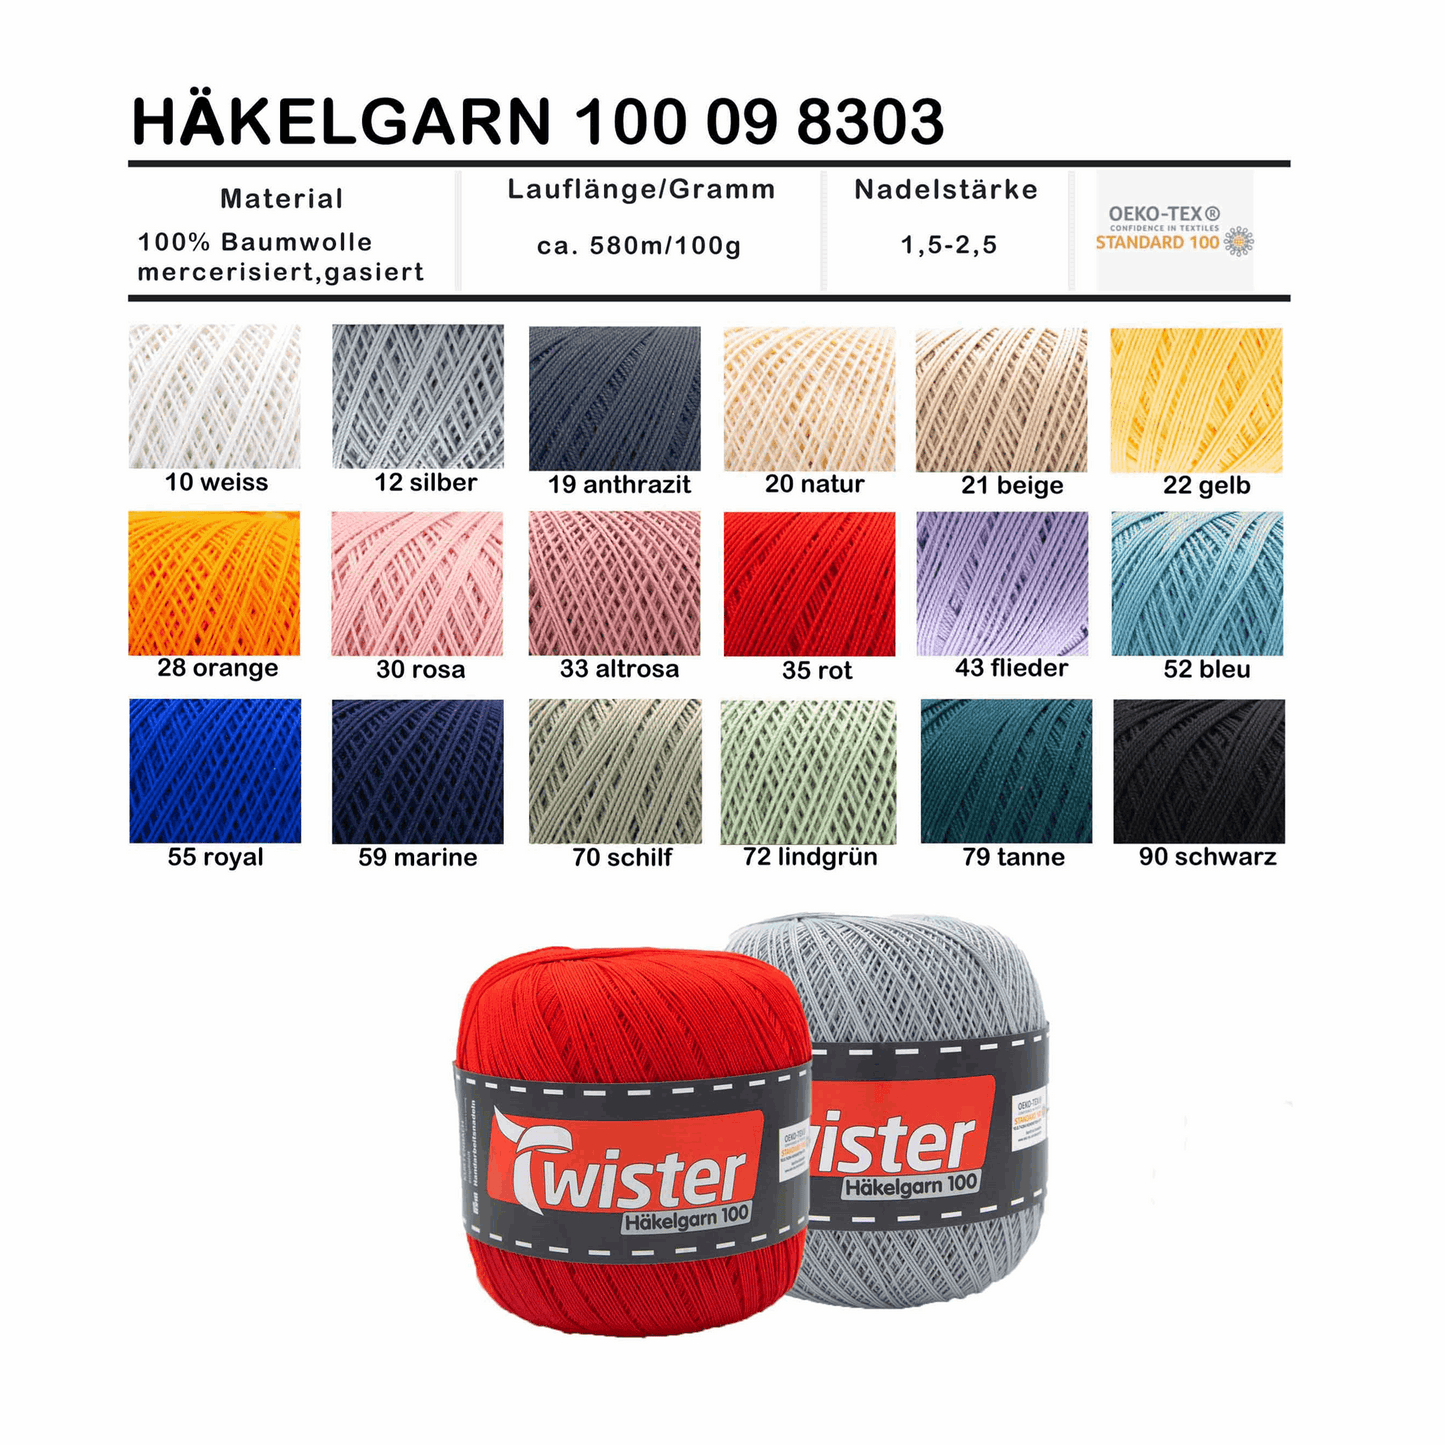 Twister Häkelgarn, 100g, 98303, Farbe schwarz 90